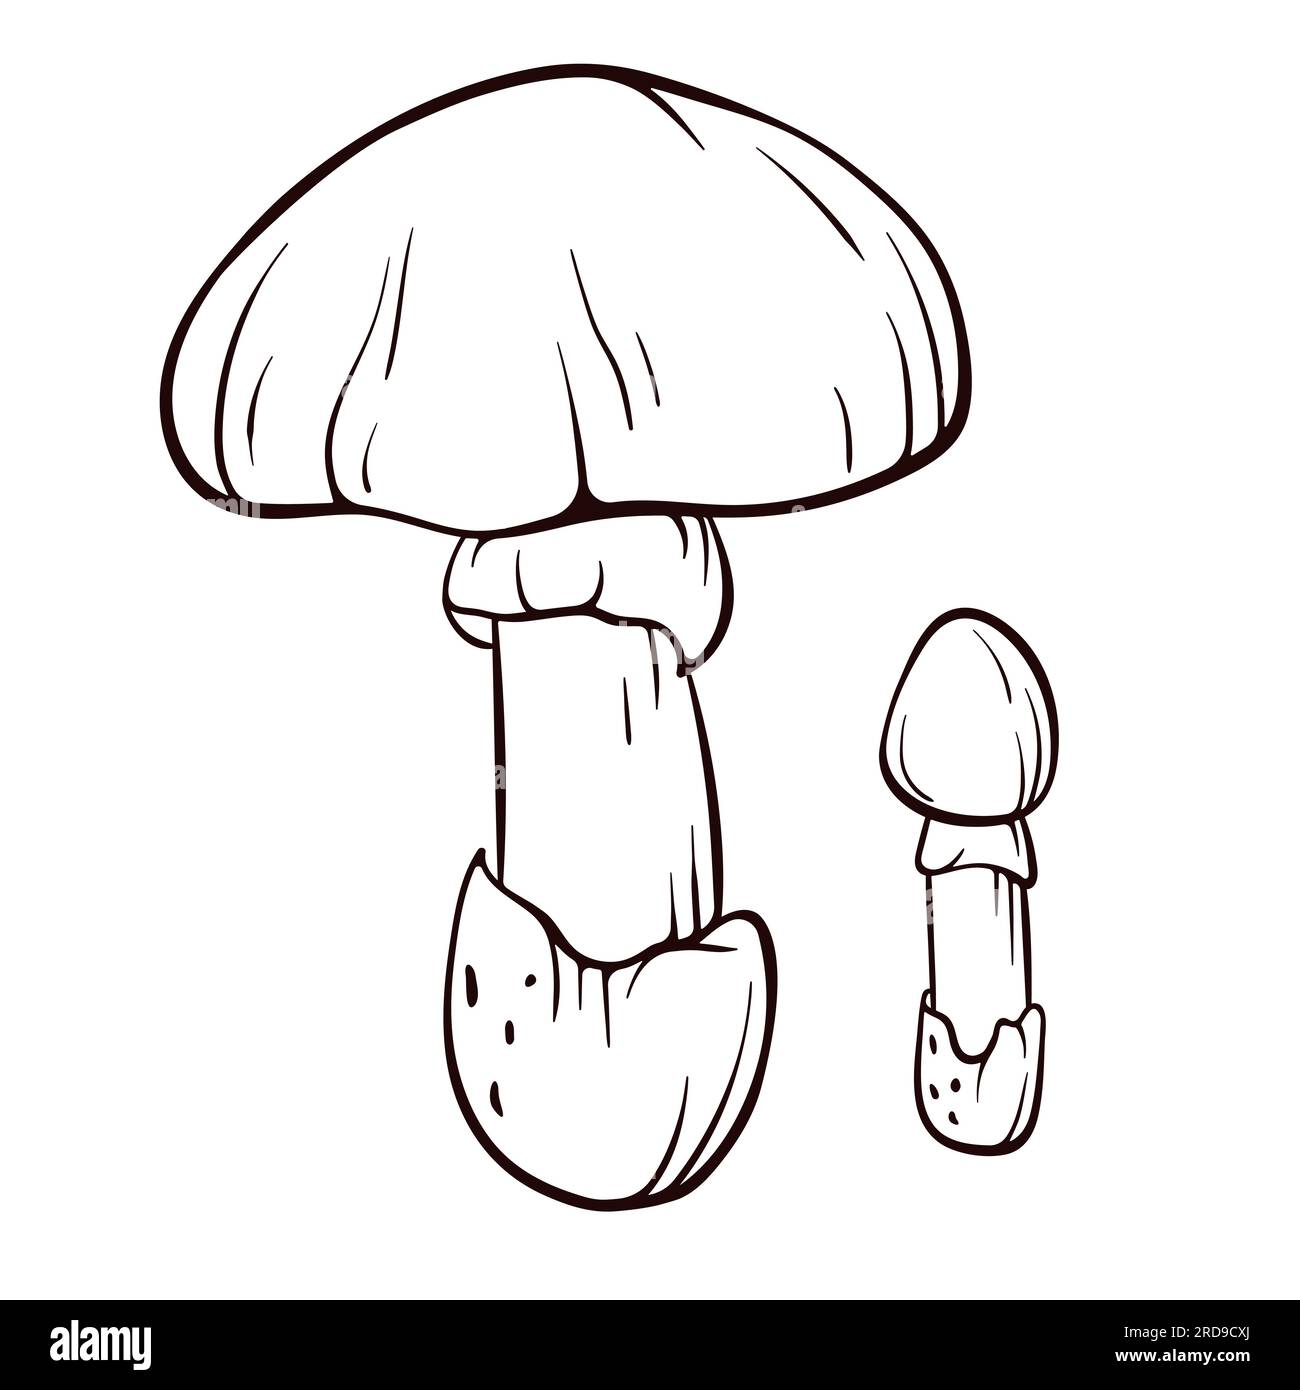 Fungo Caesars in line art. Illustrazione di funghi commestibili. Pianta forestale disegnata a mano. Illustrazione vettoriale isolata su sfondo bianco. Illustrazione Vettoriale